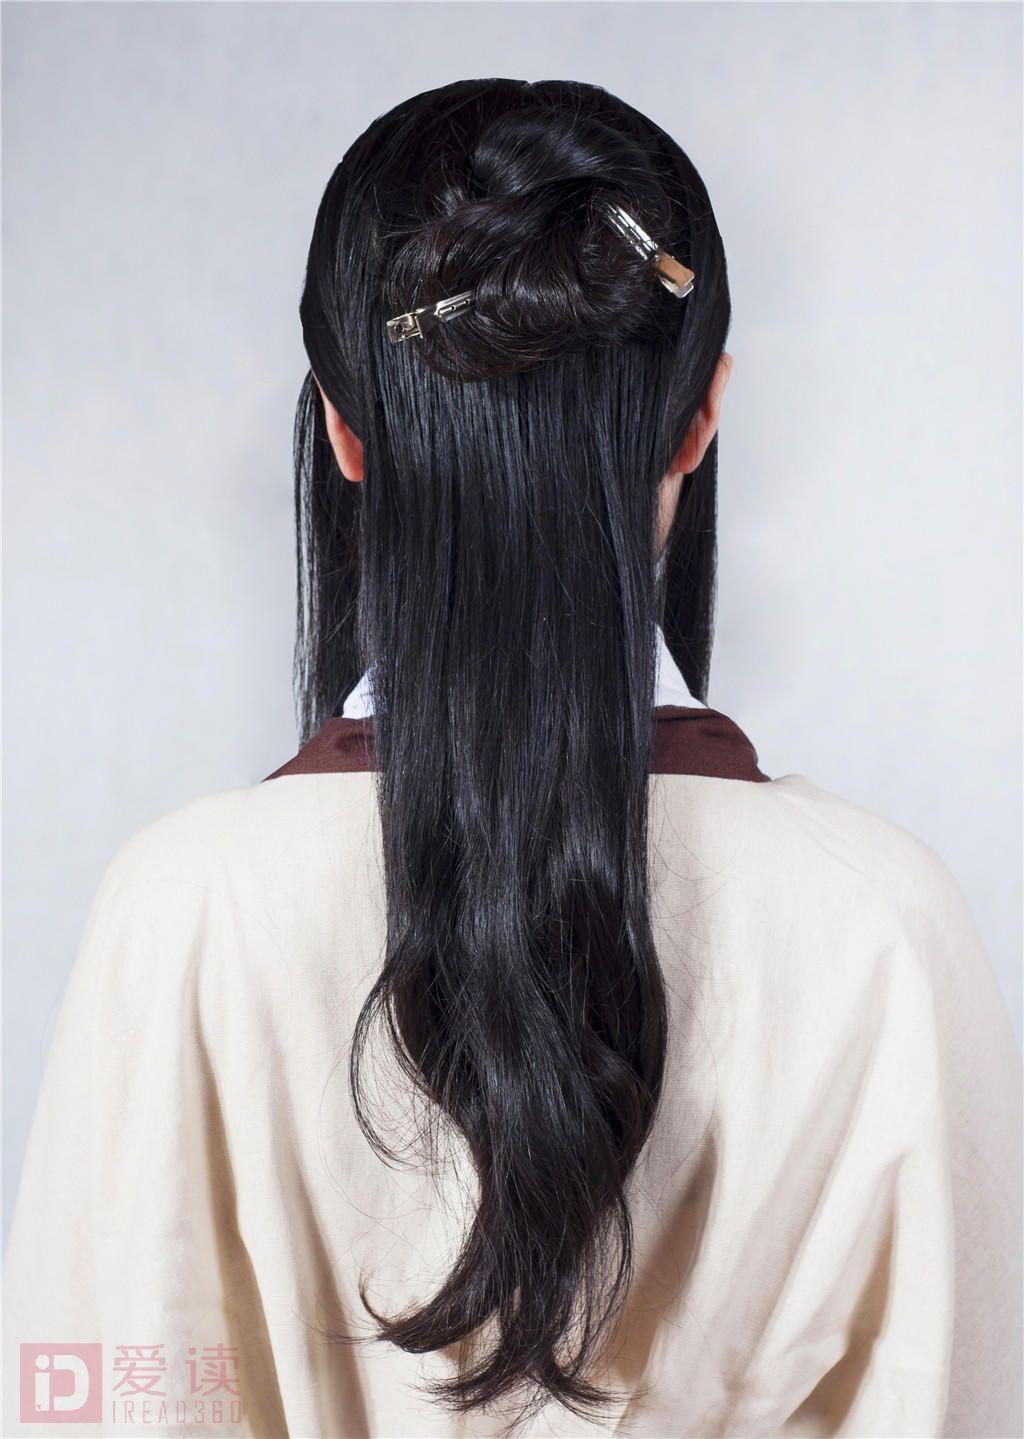 古装影视发型之宋朝贵族女子造型 - 职业技能培训课堂 - 爱读